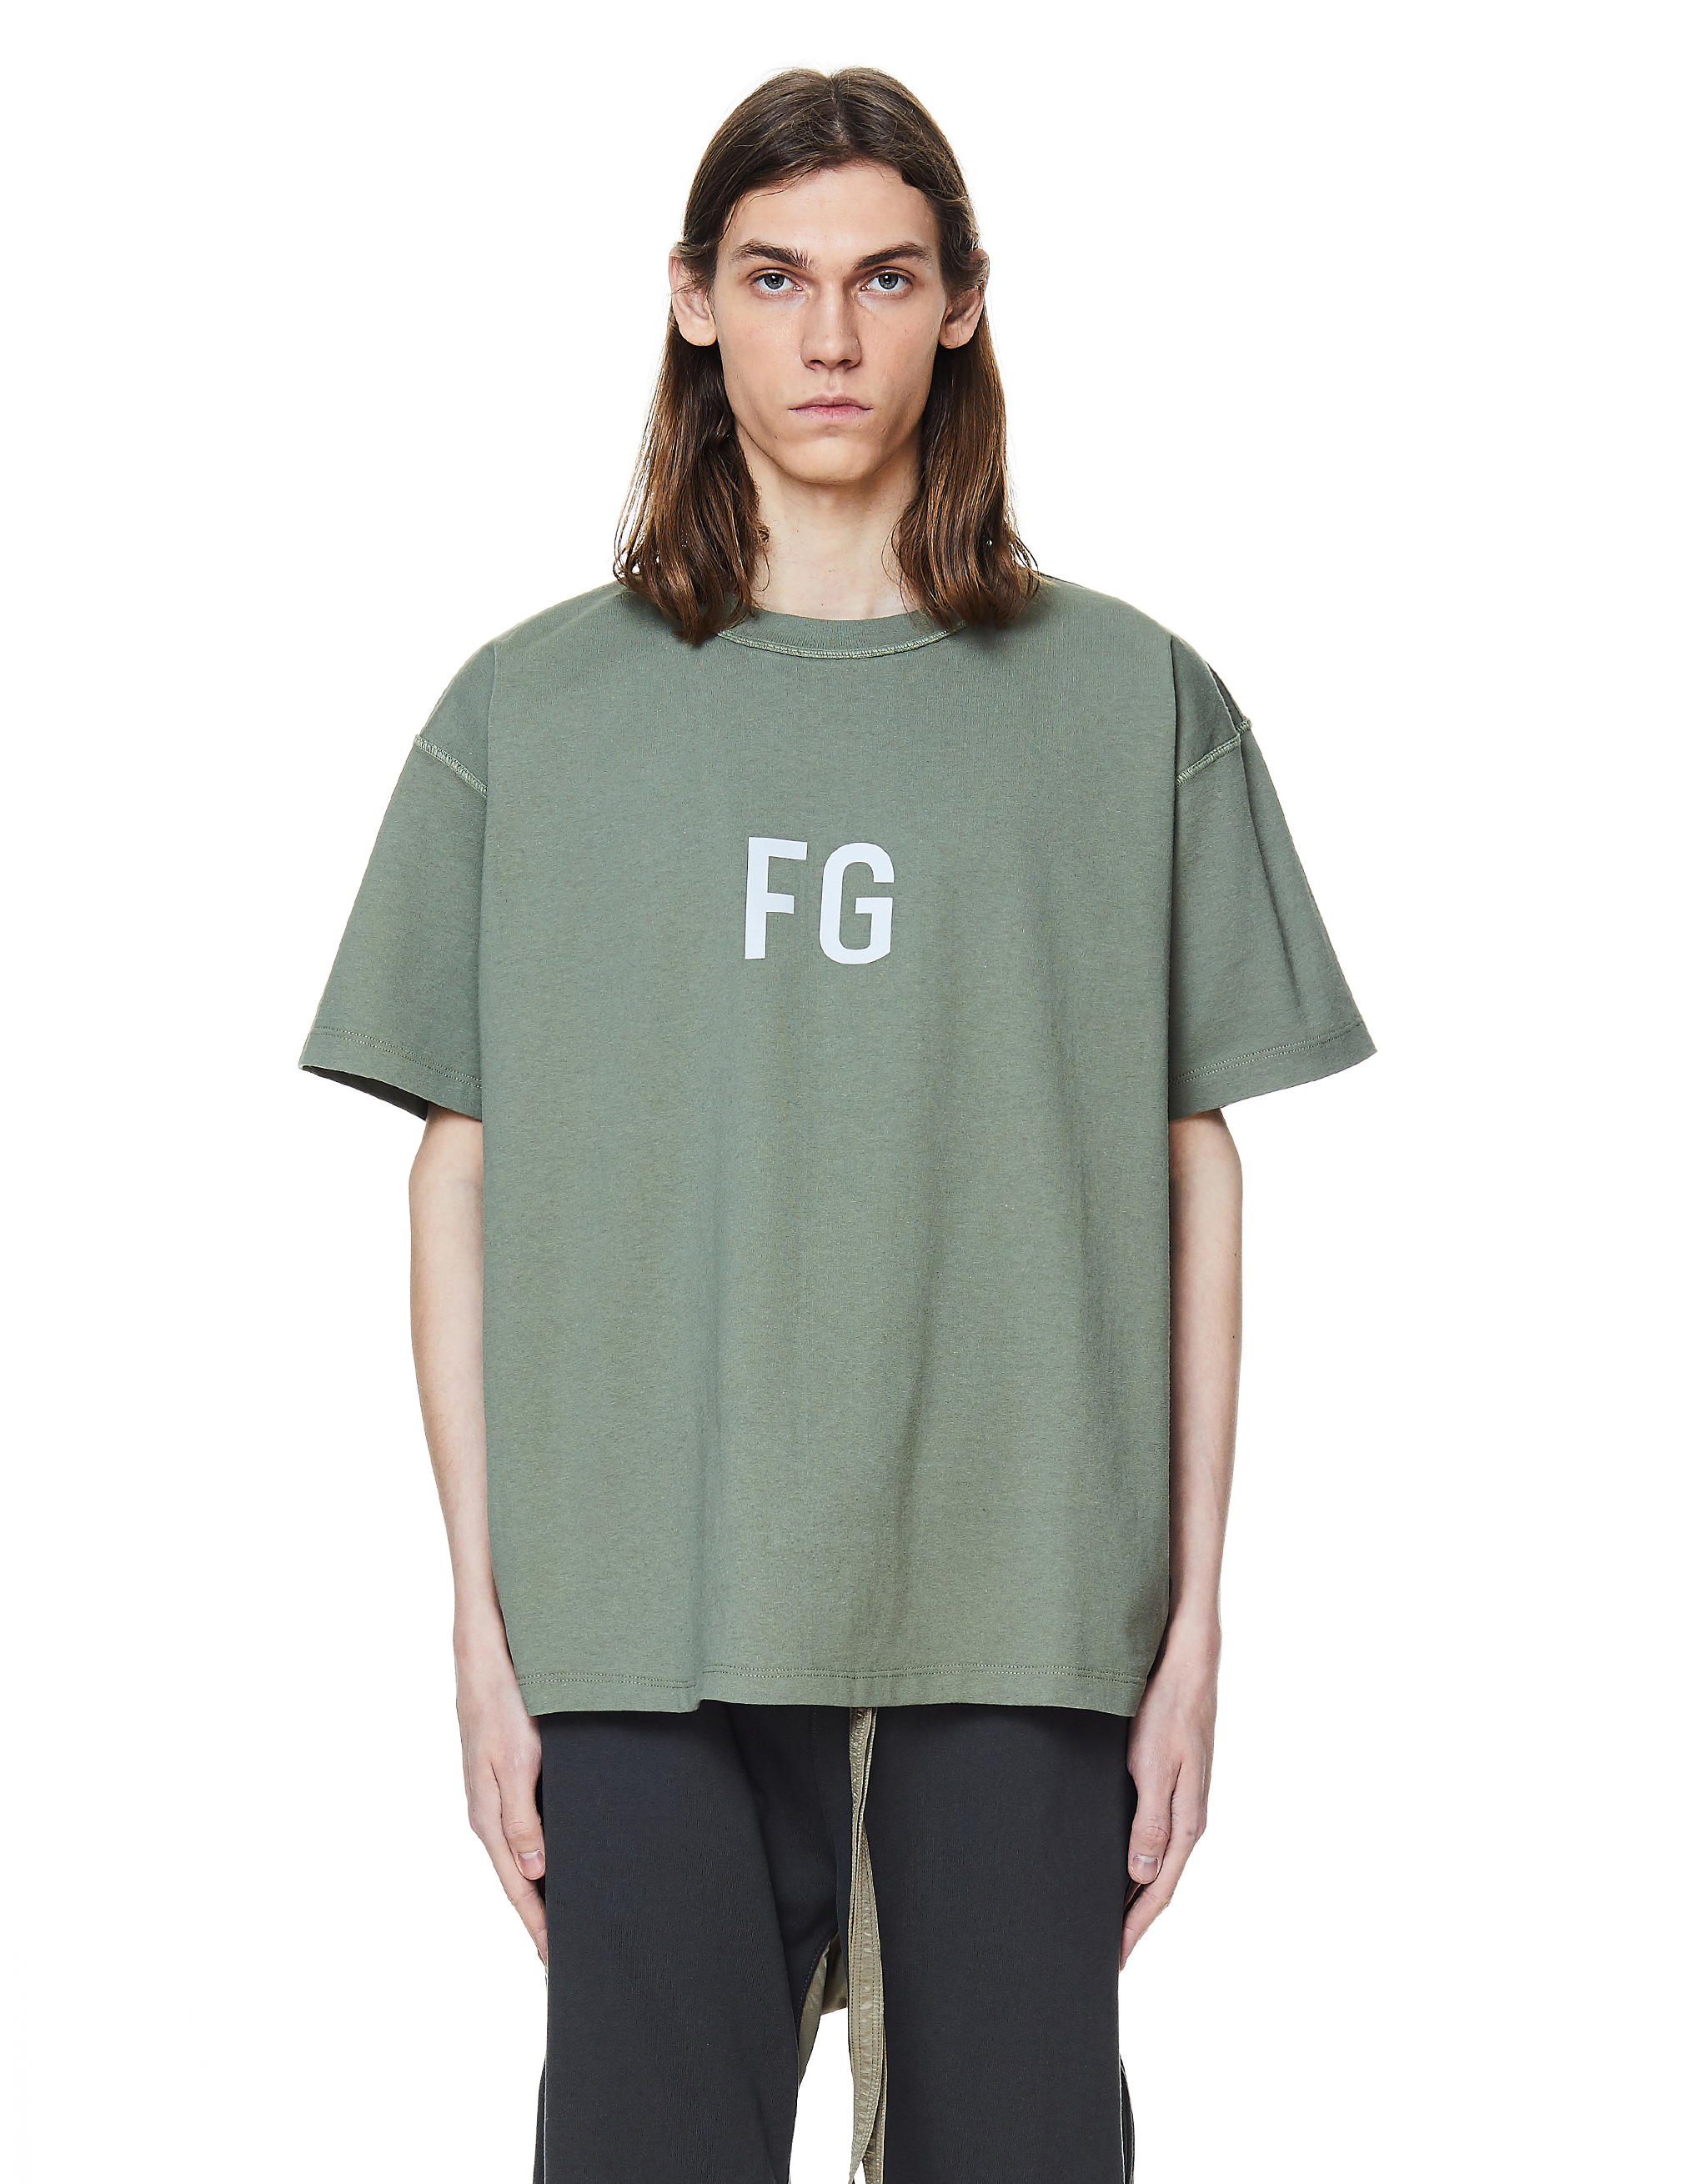 素晴らしい価格 Fear Of God Sixth Collection FG Tシャツ XS asakusa ...